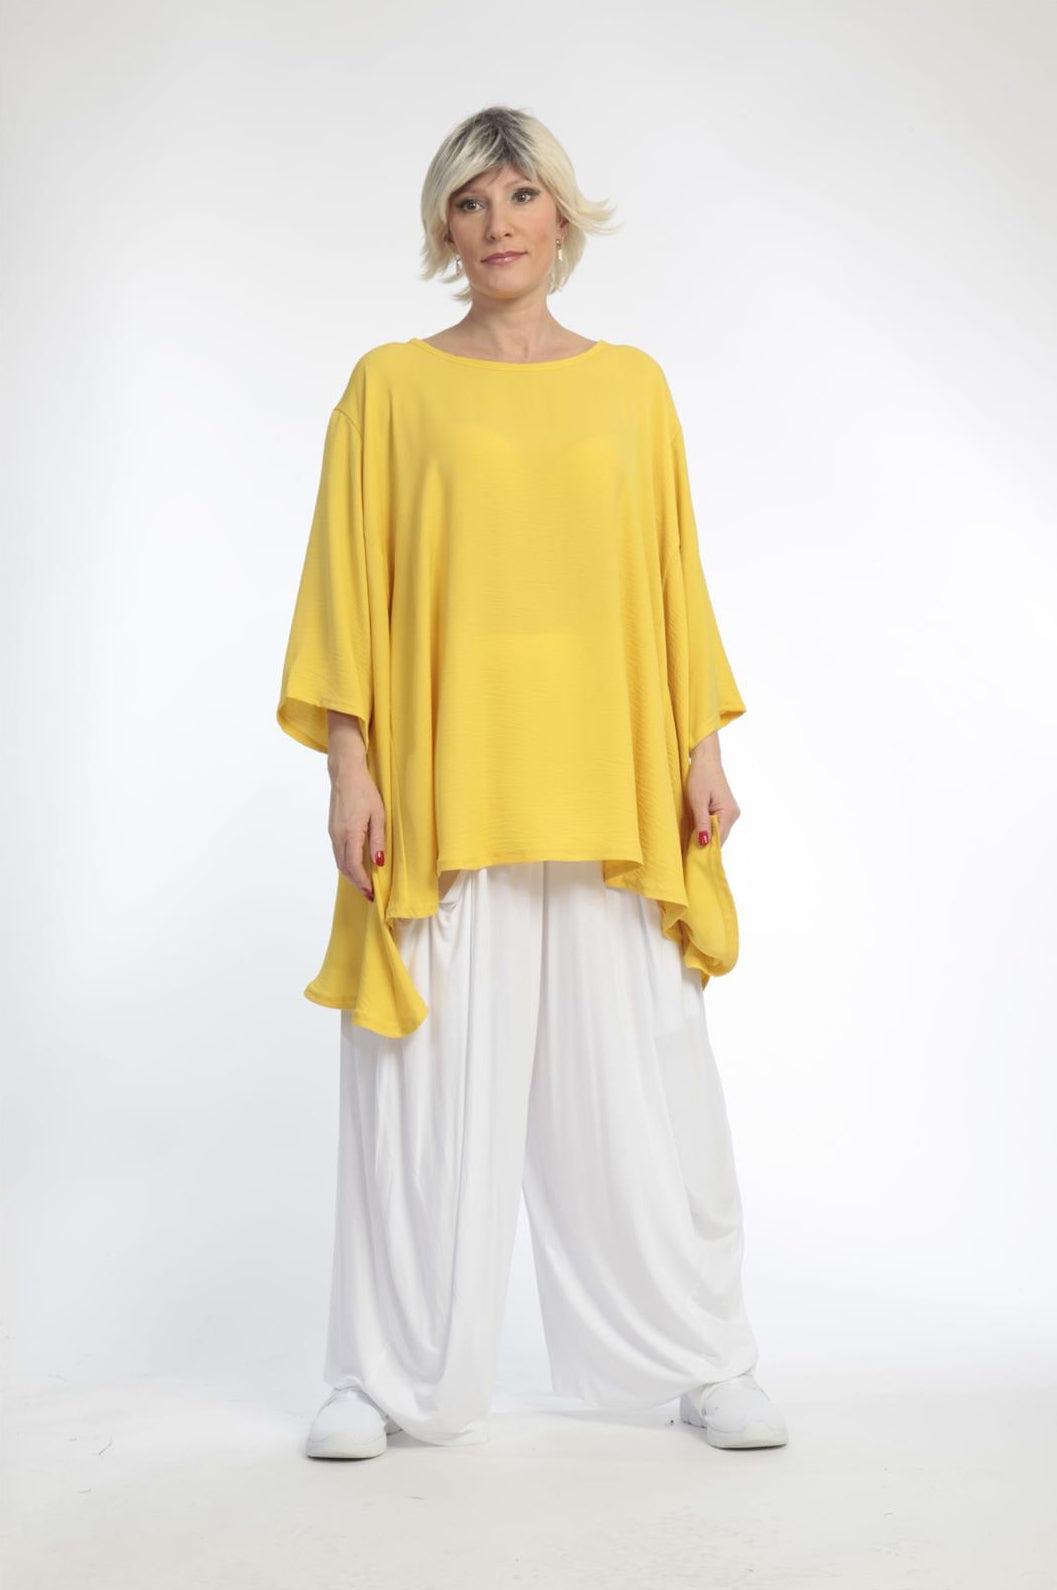 Sommer Big Shirt in A-Form aus er Twill Qualität, Gelb Lagenlook Oversize Mode B2B Großhandel